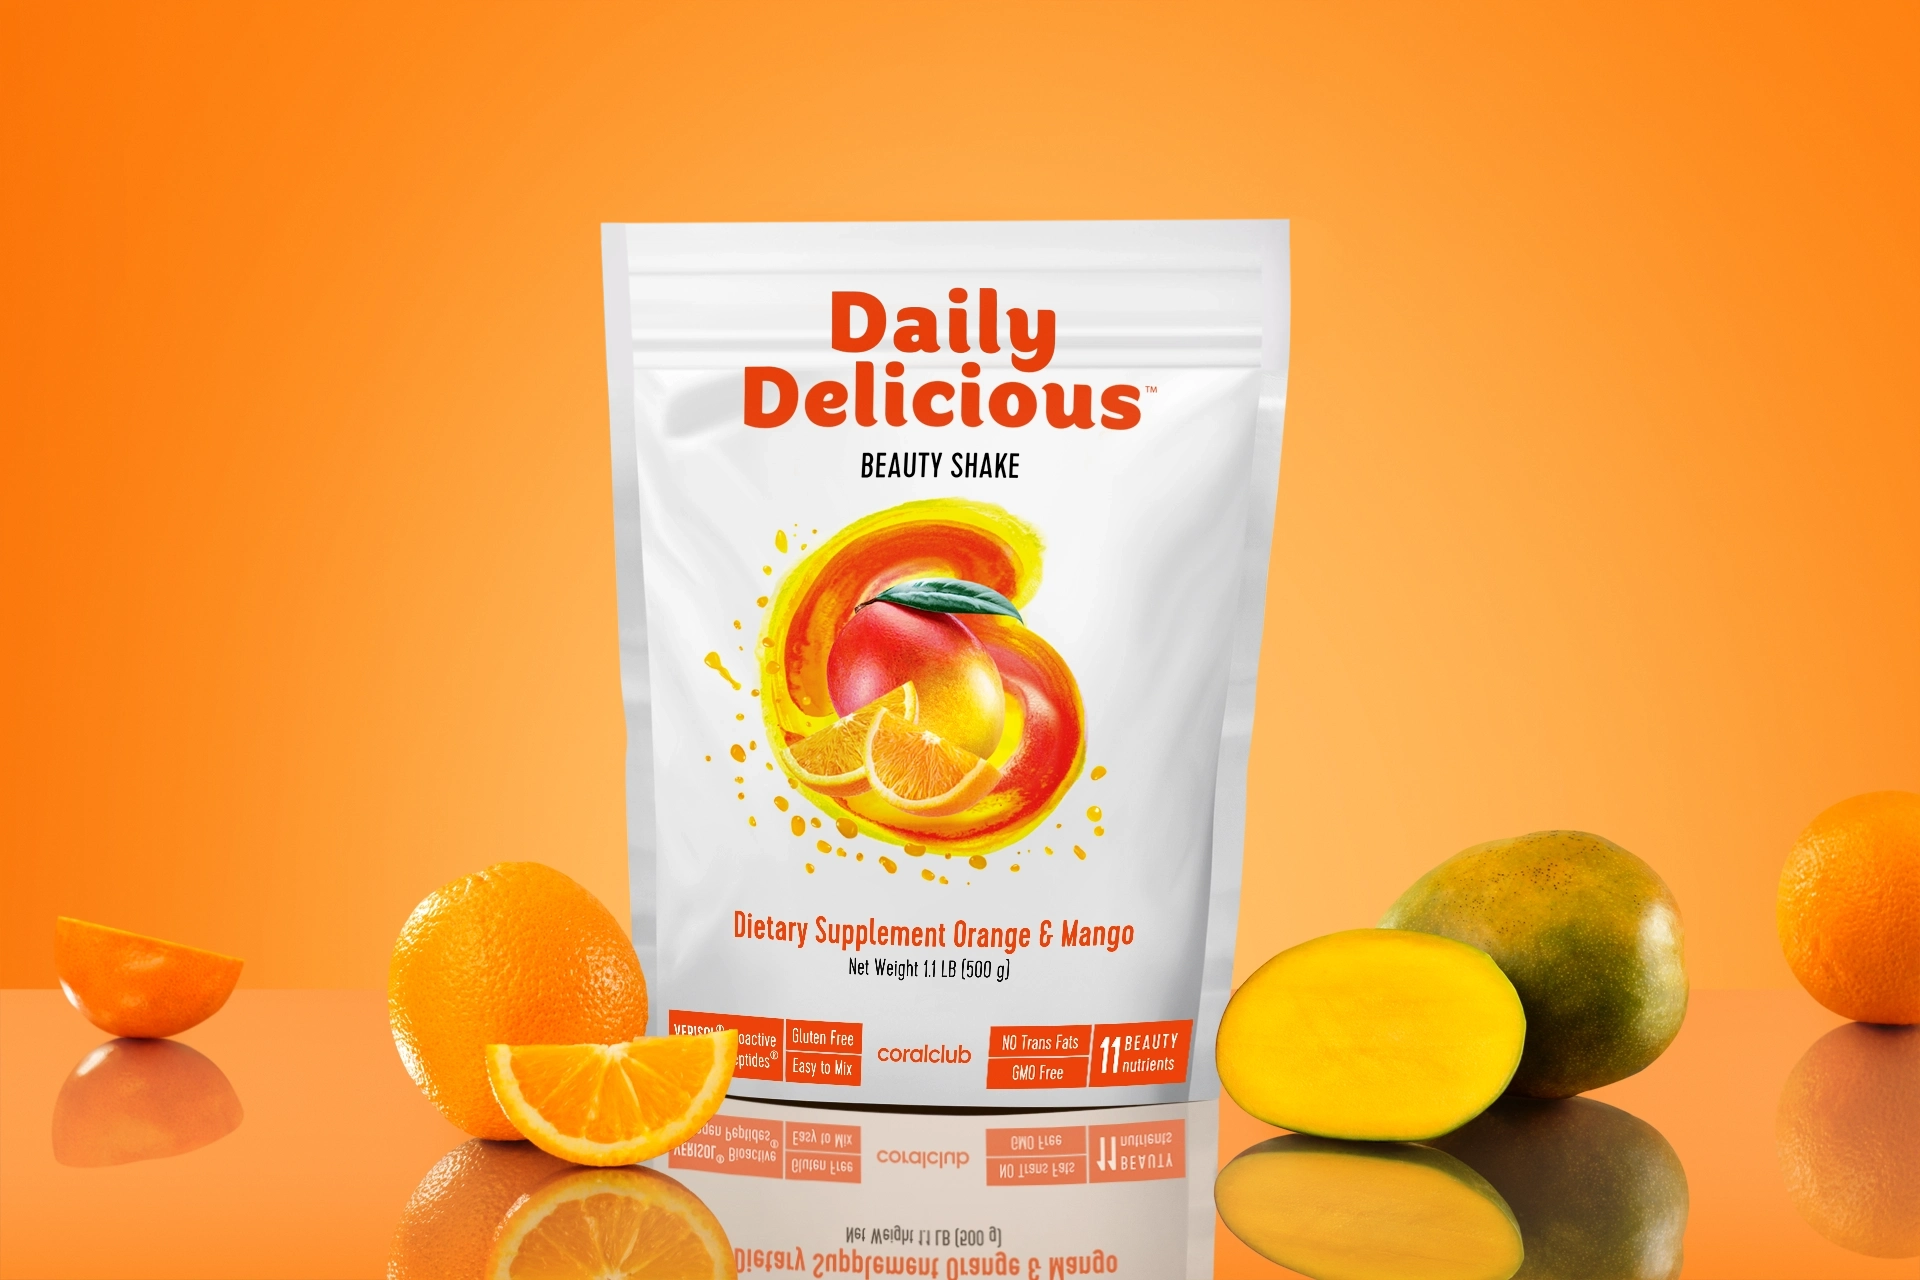 Daily Delicious Beauty Shake Orange & Mango (211800)